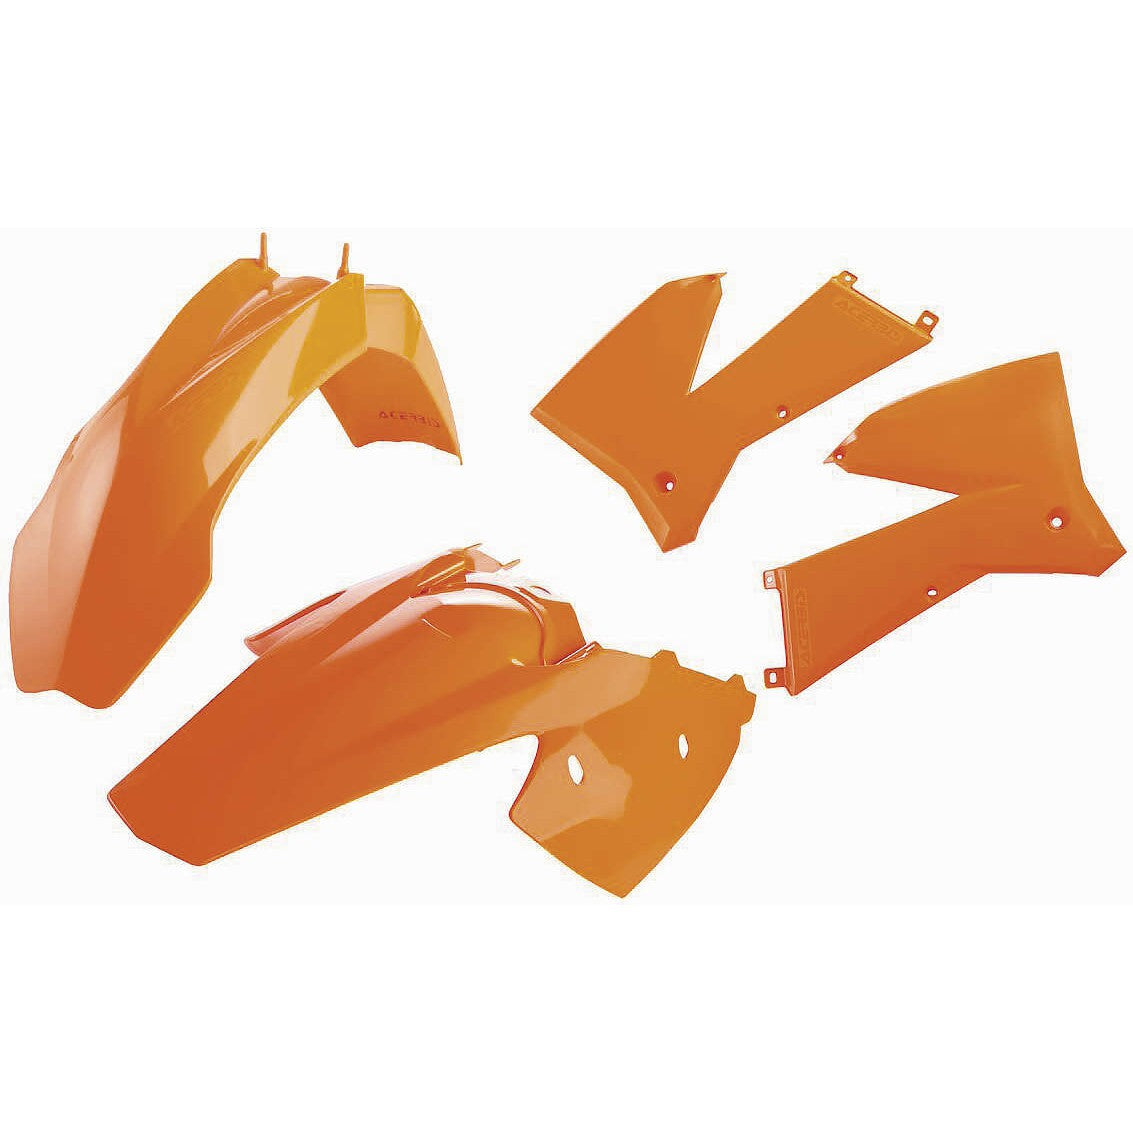 Acerbis Orange Standard Plastic Kit for KTM - 2071130237